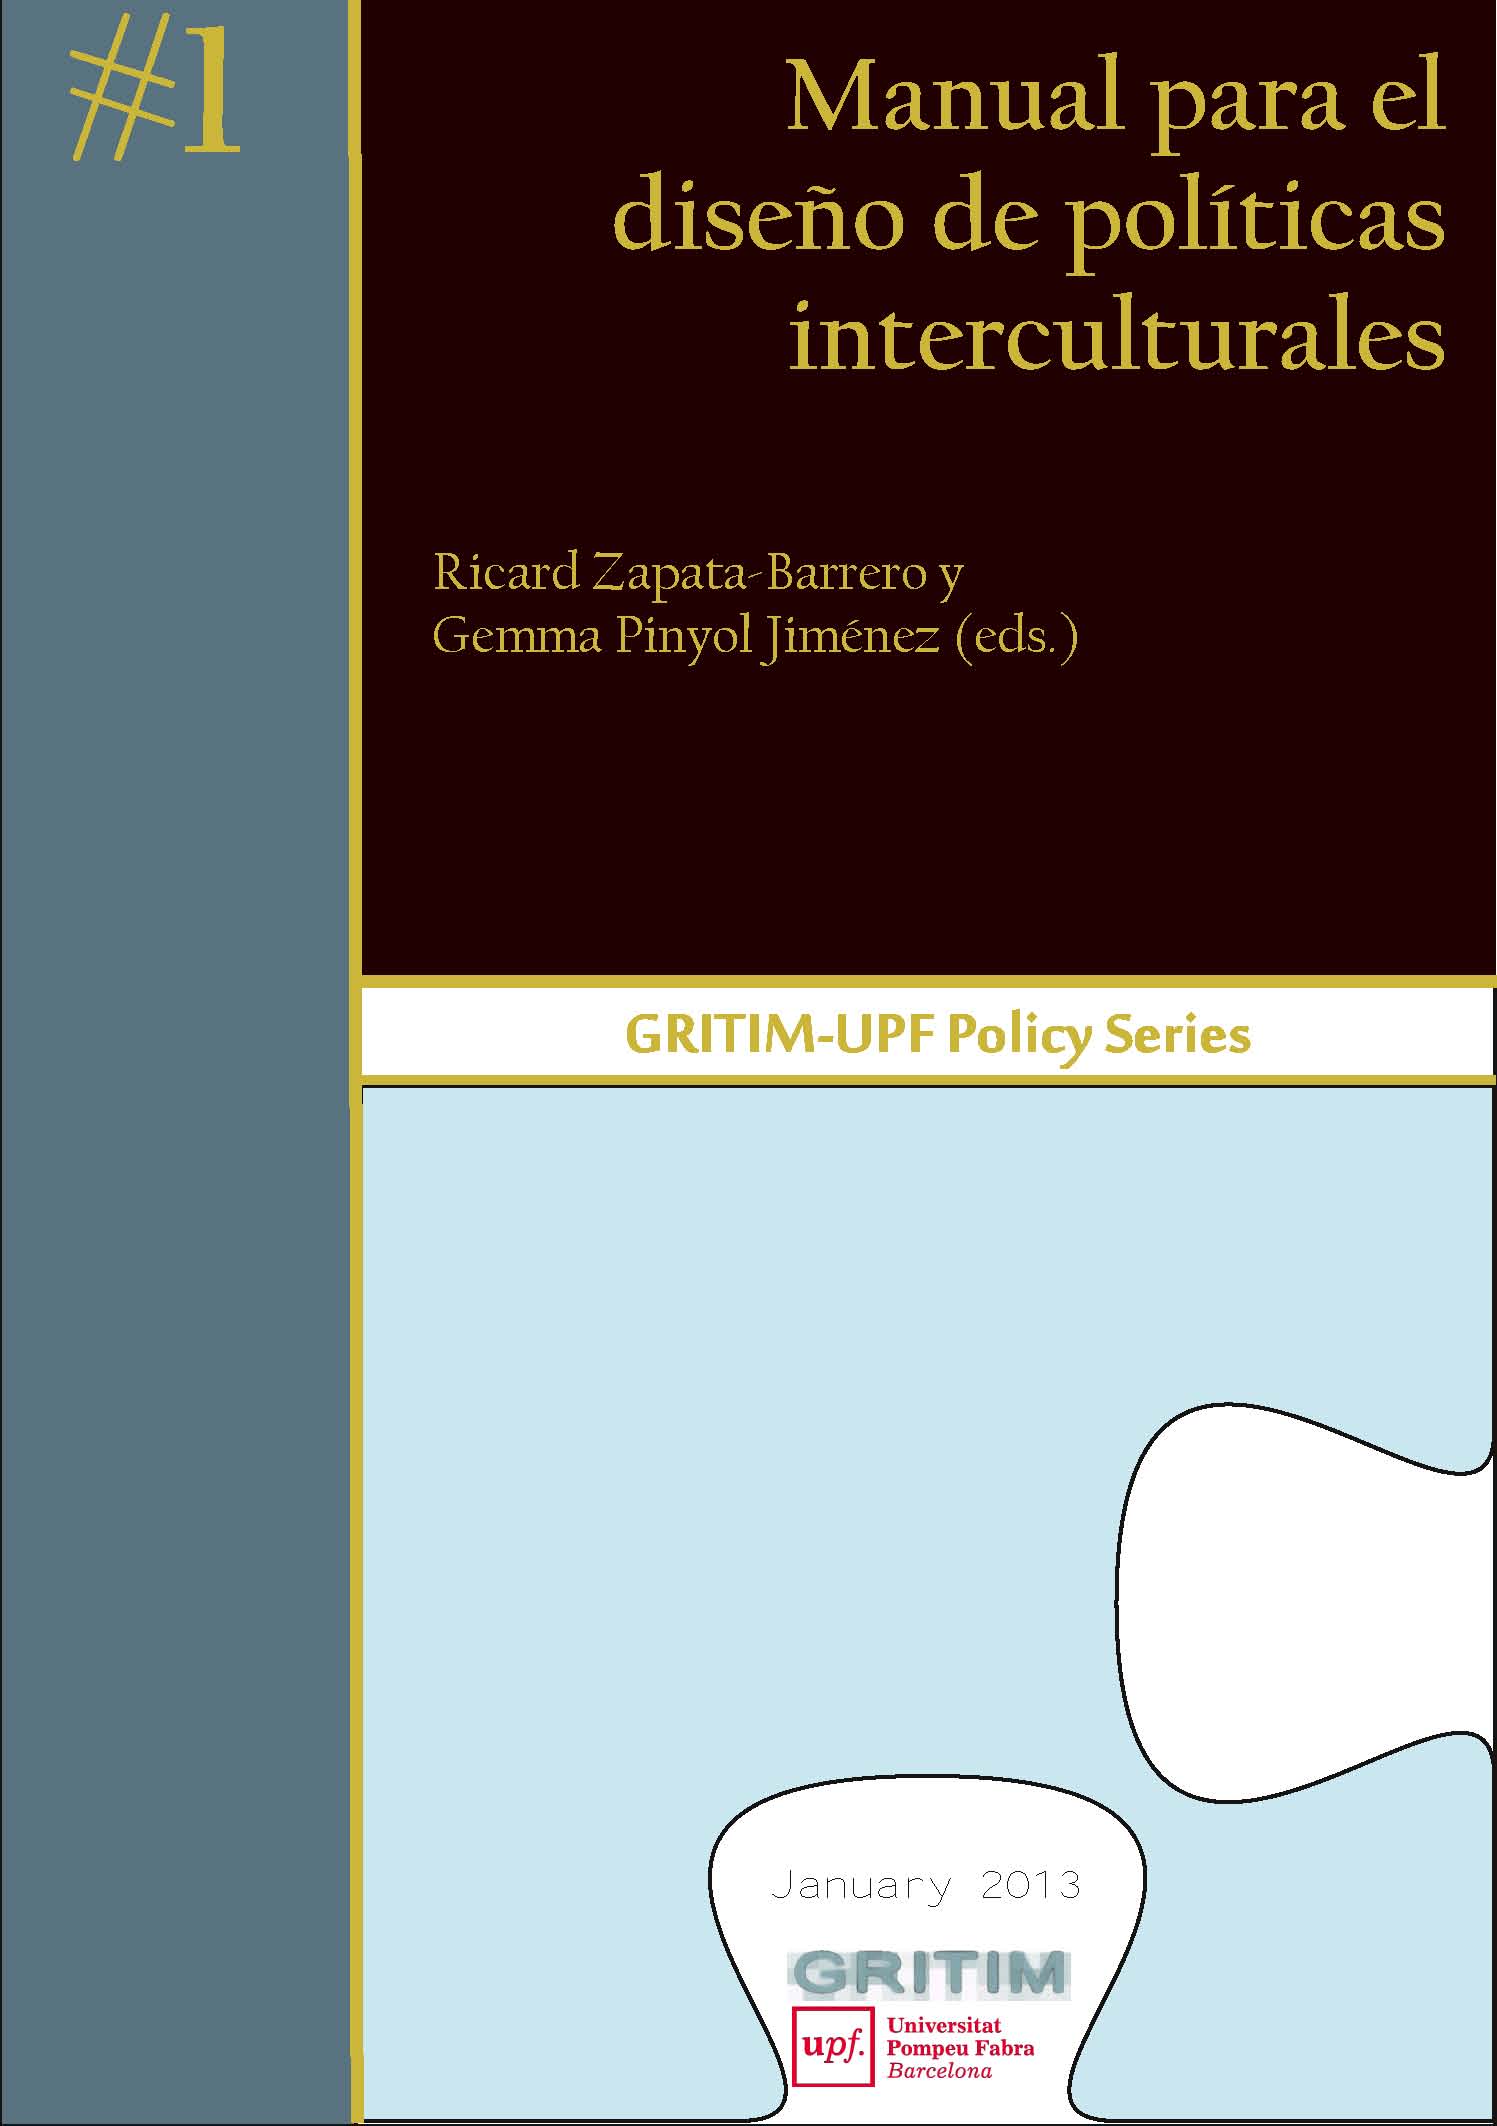  Manual para el diseño de políticas interculturales